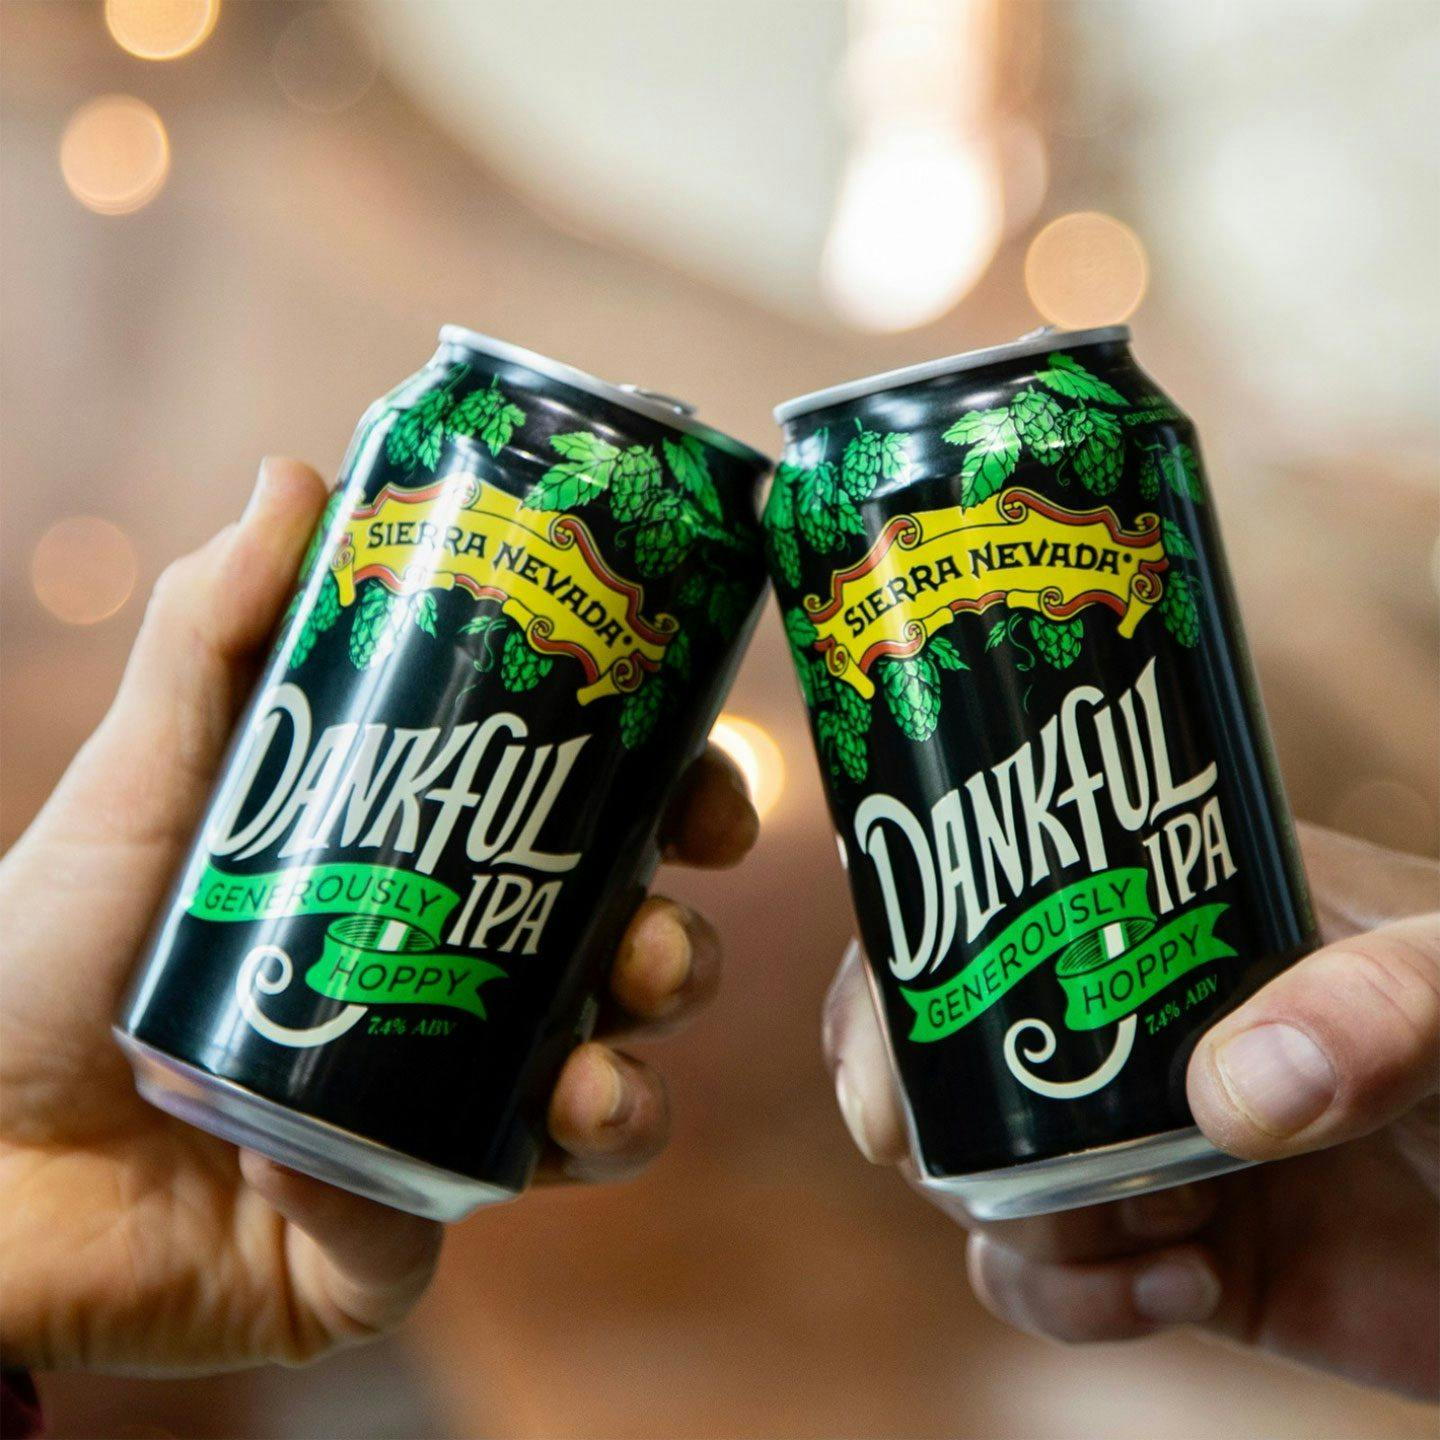 Cheersing Dankful IPA beer cans